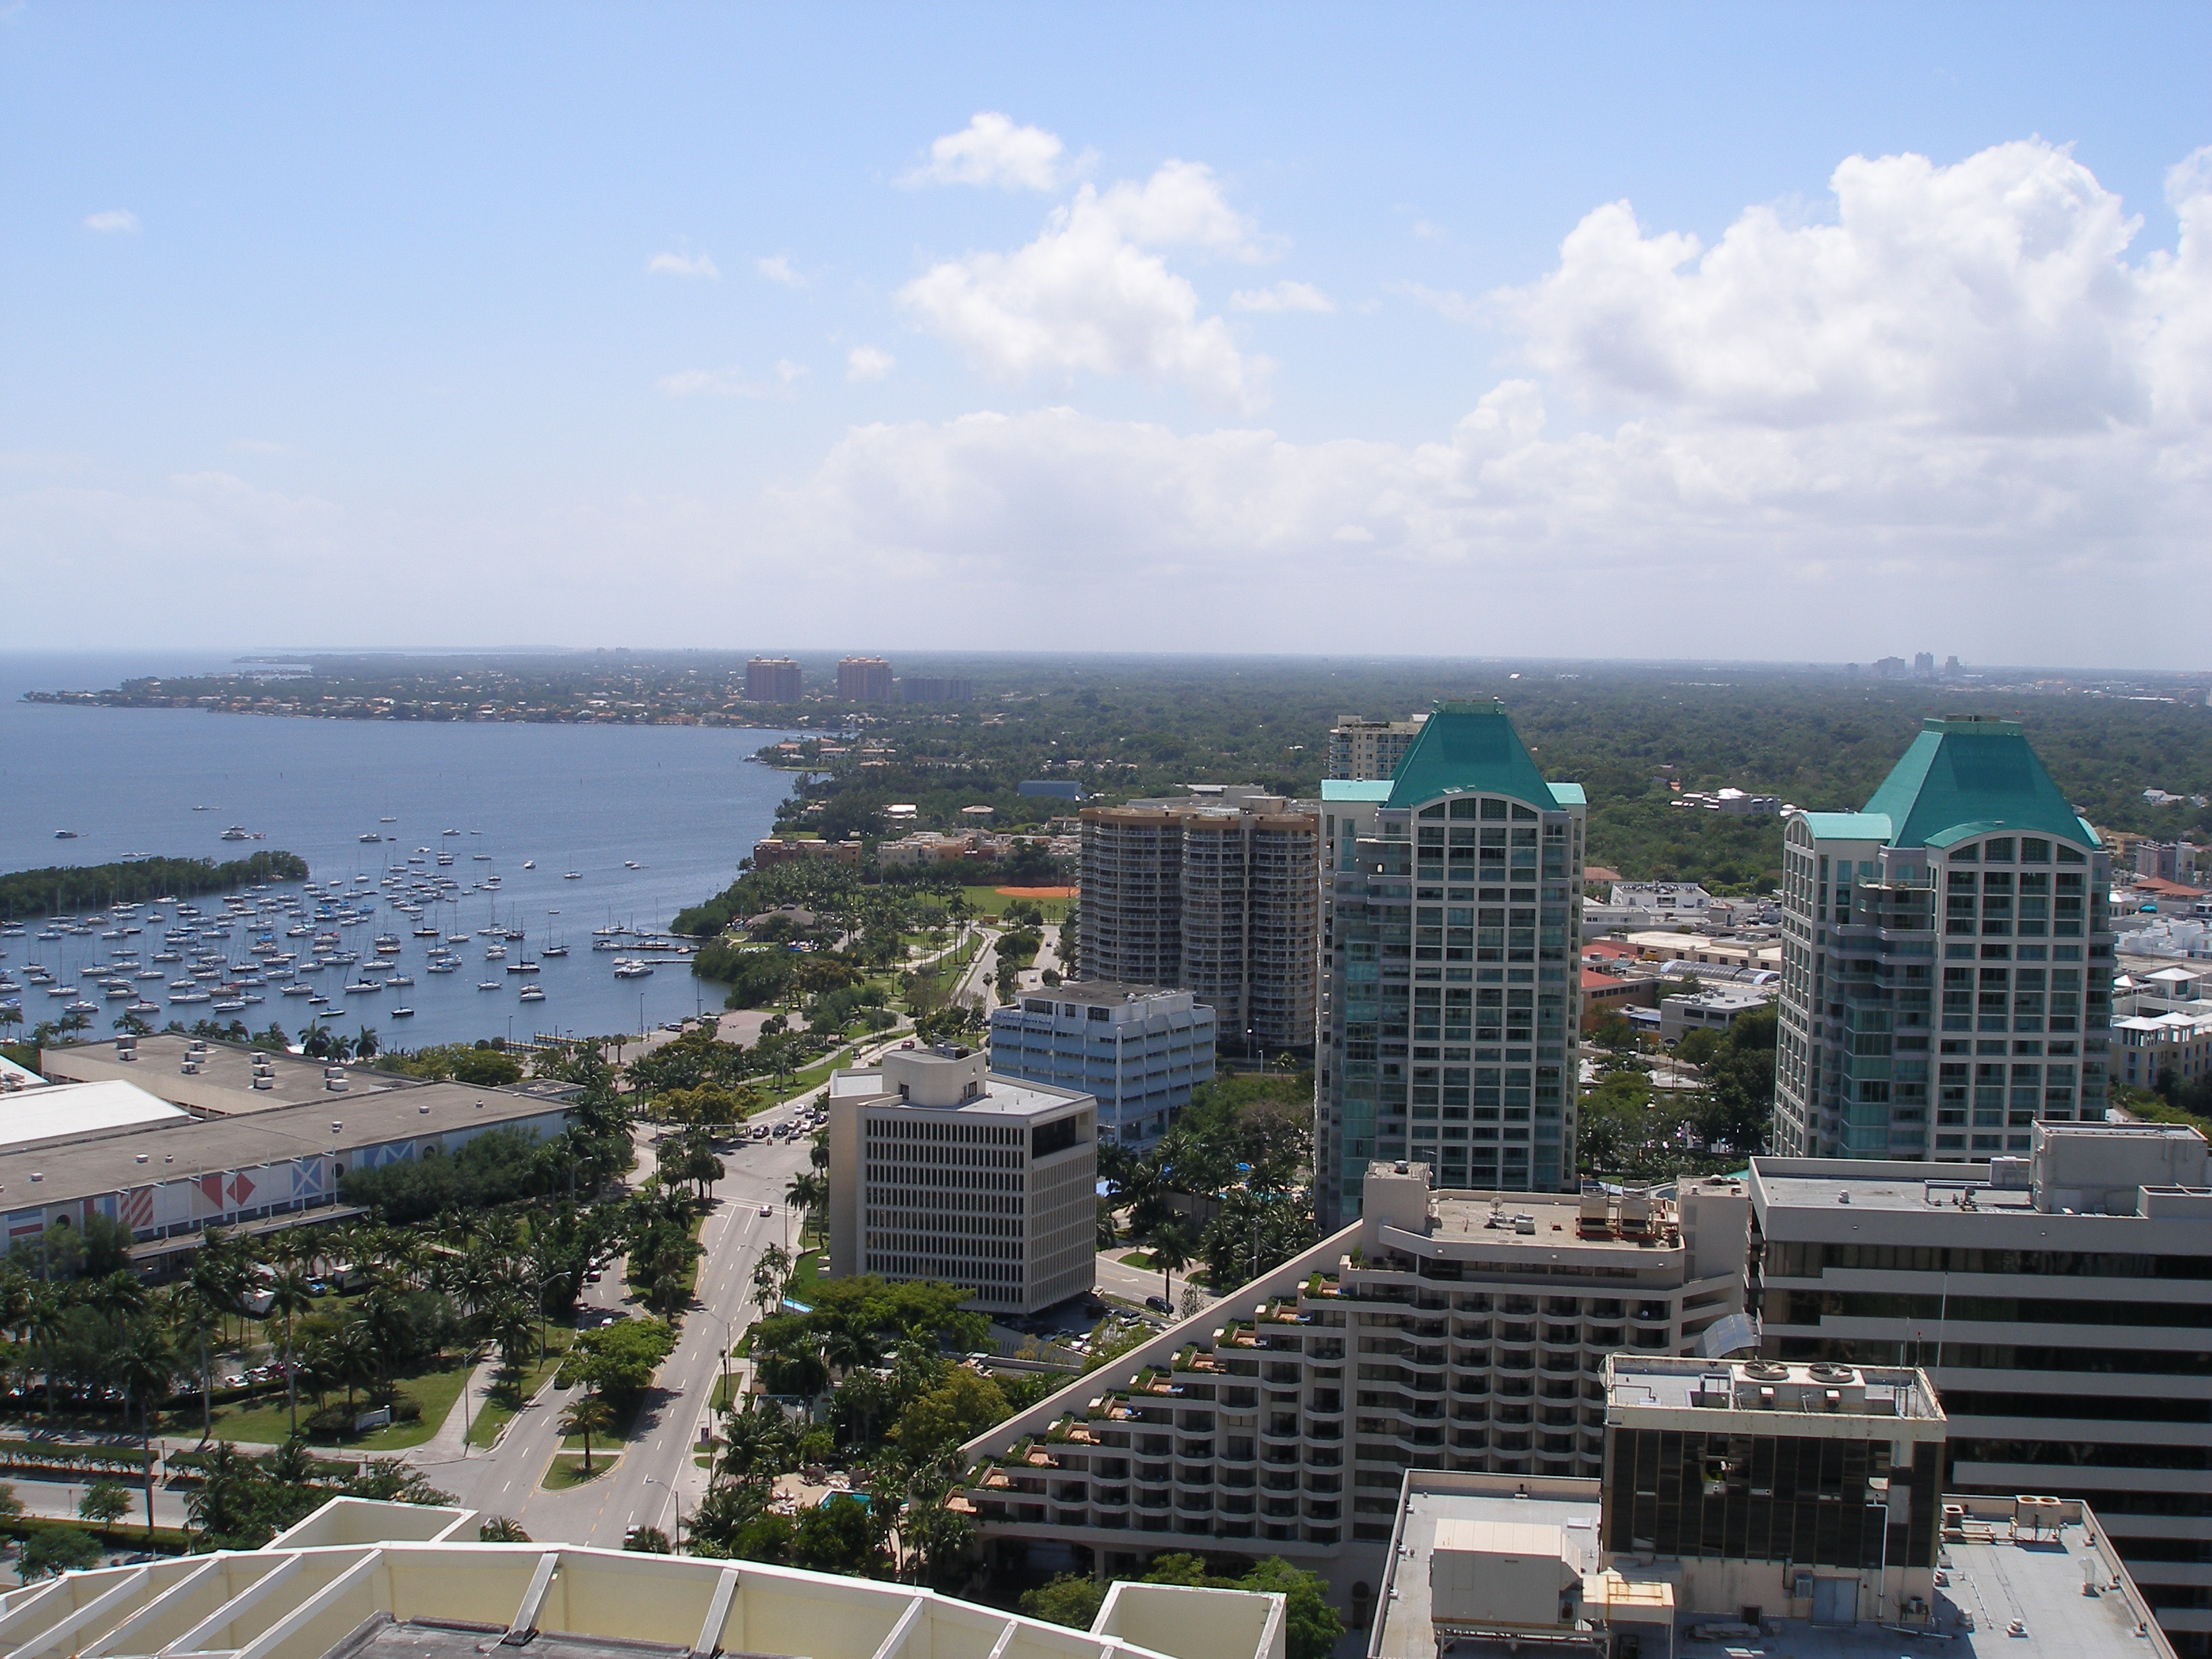 Ciudad de Miami adelanta plan para construir 12 mil viviendas asequibles